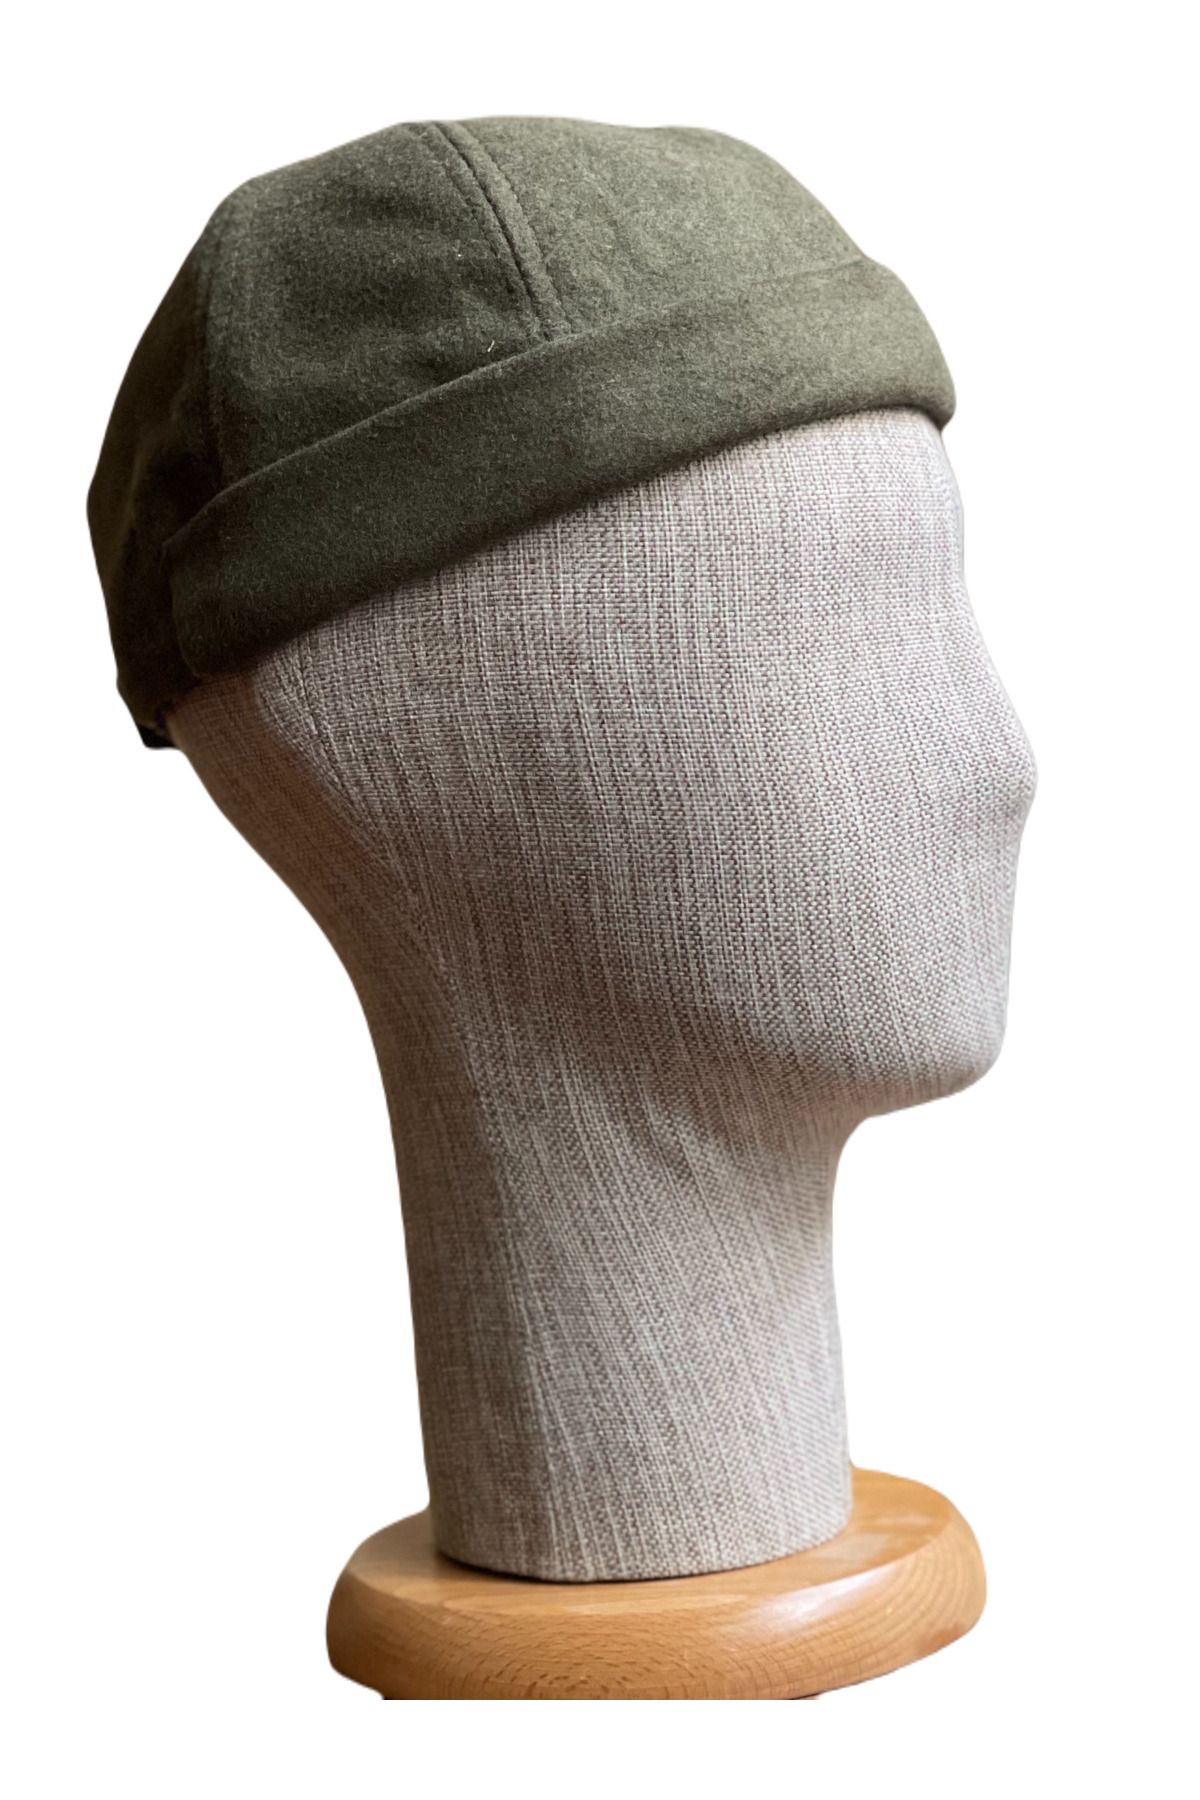 Rupen Kraft Kışlık Kaşe Cap Ayarlanabilir Docker Şapka Kışlık Takke Şapka Retro Şapka Takke